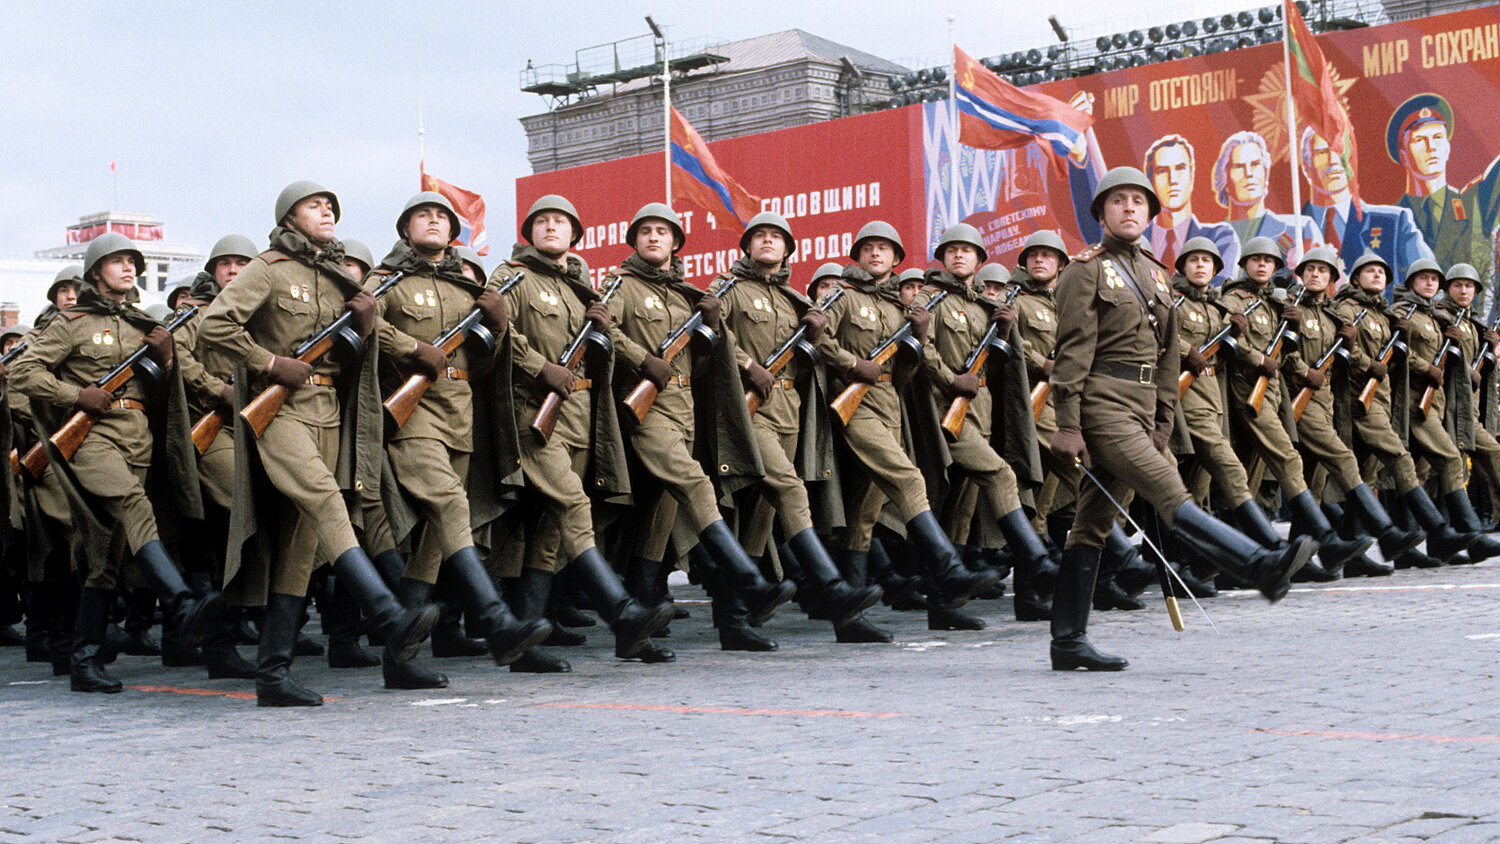 Rreziku që i kanoset botës, a po rilind Bashkimi Sovjetik?